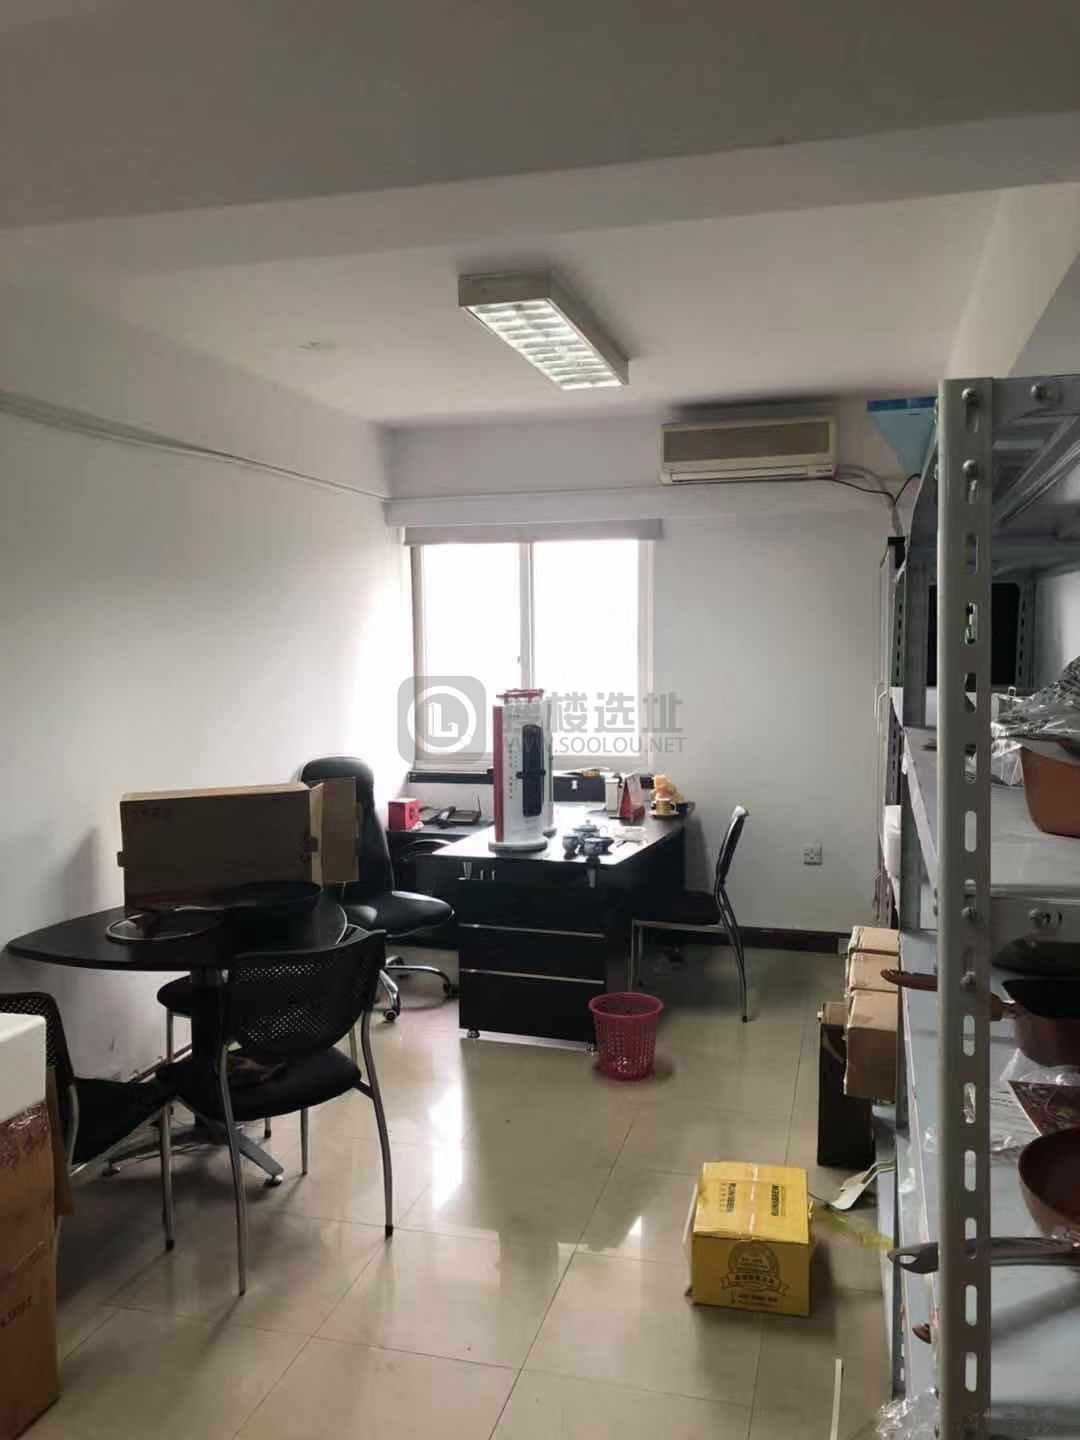 浙江省机电集团信息综合楼面积45平